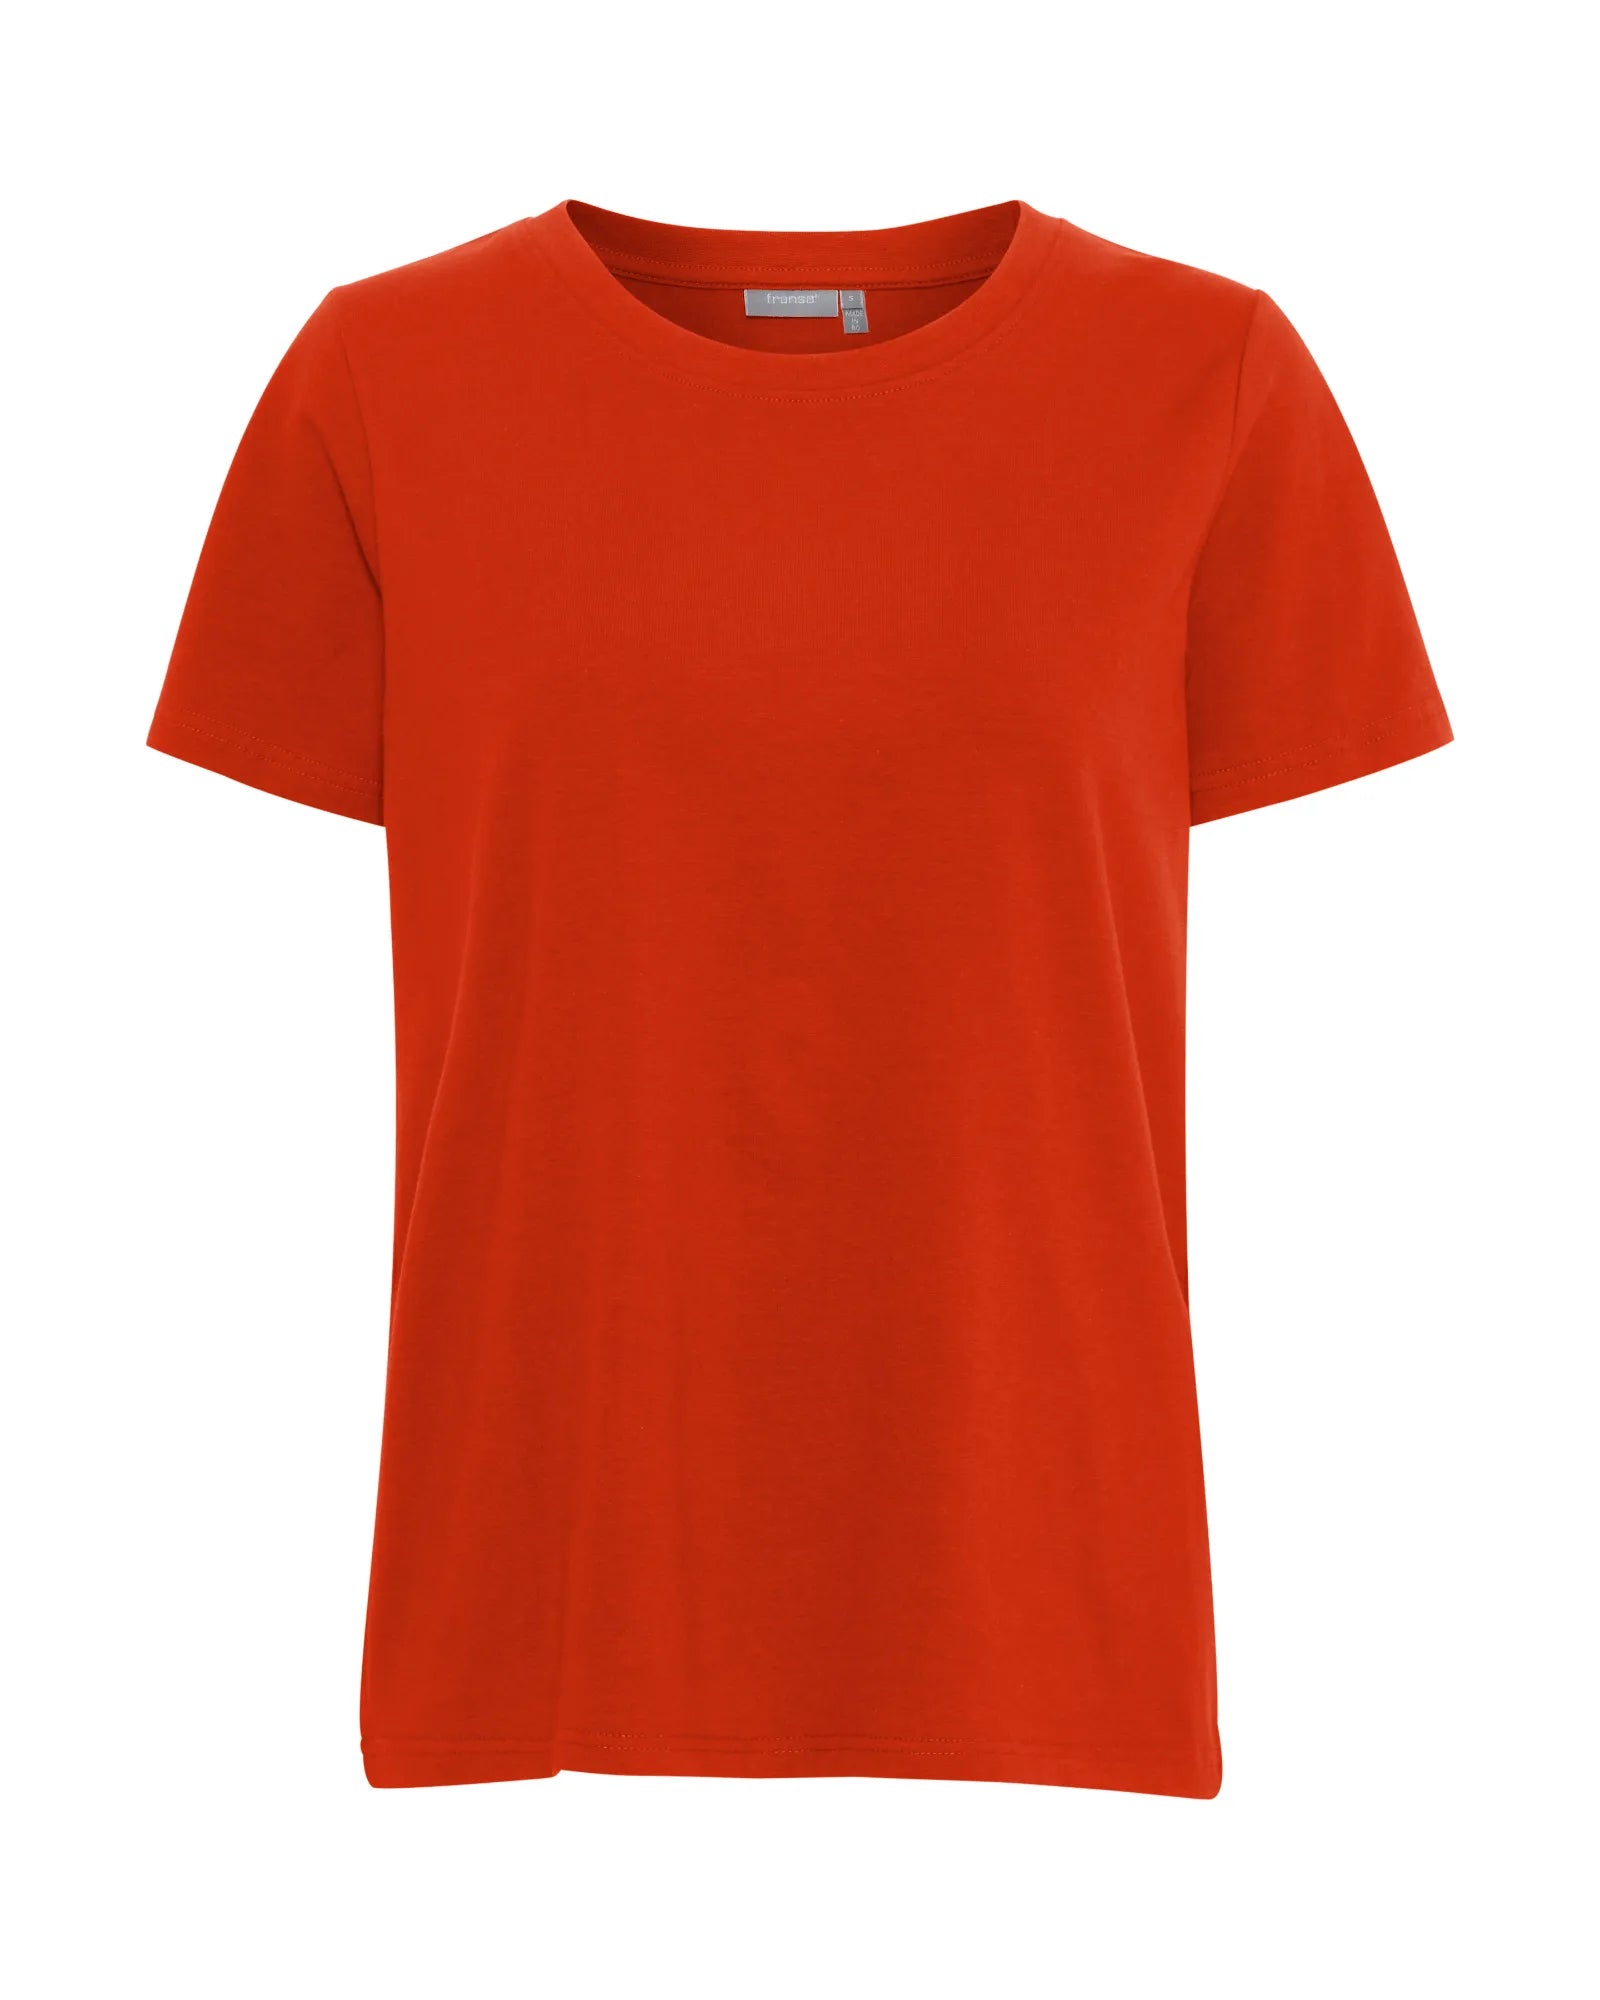 Zashoulder T-Shirt - Red Alert